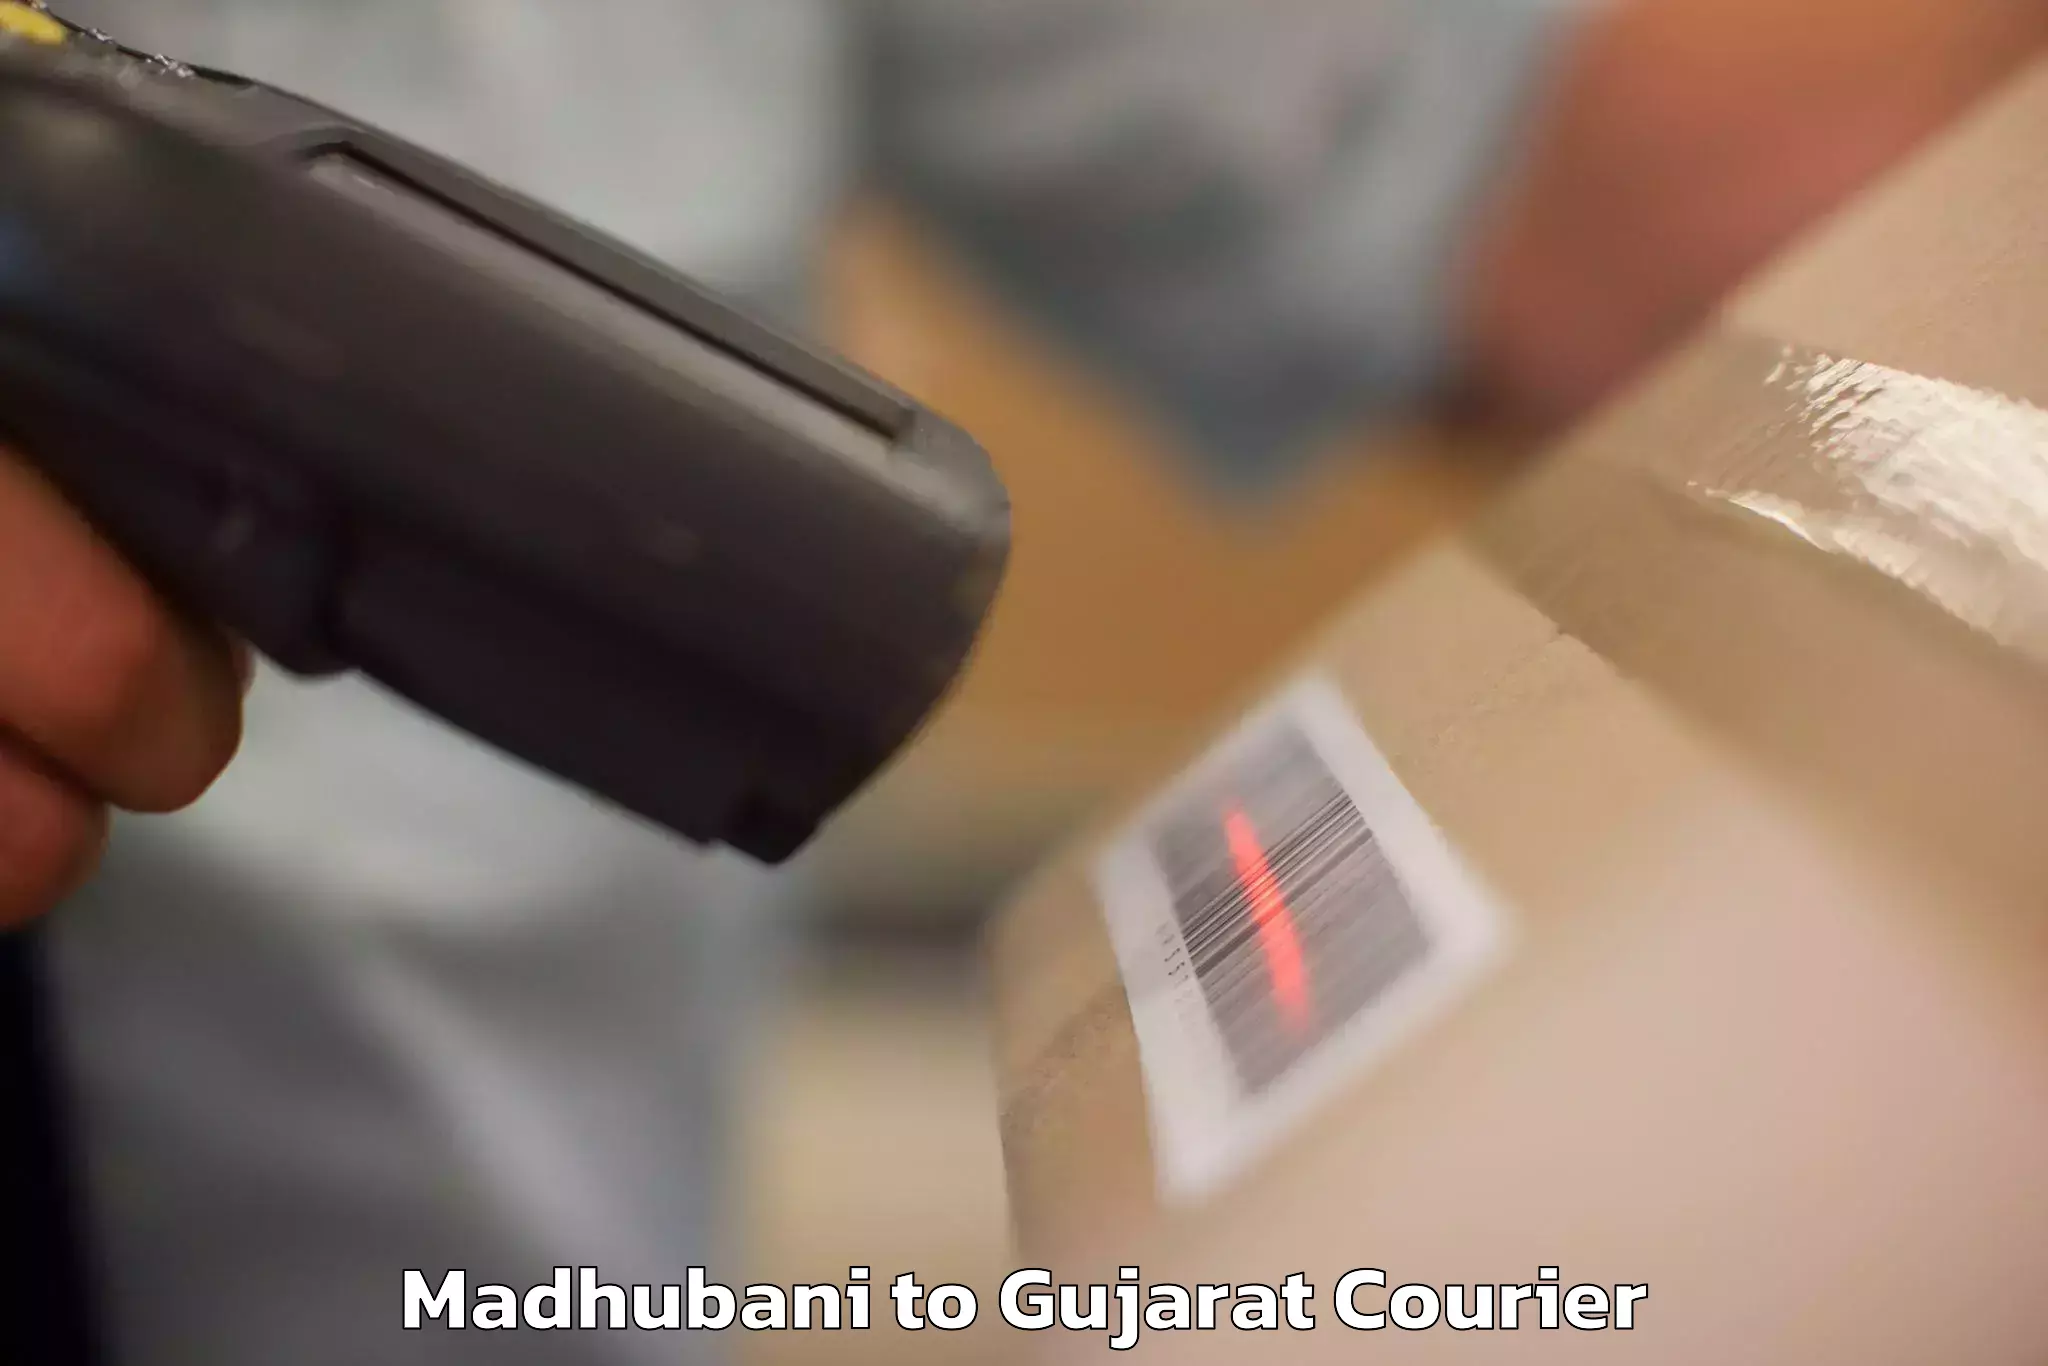 Door-to-door baggage service Madhubani to Gujarat